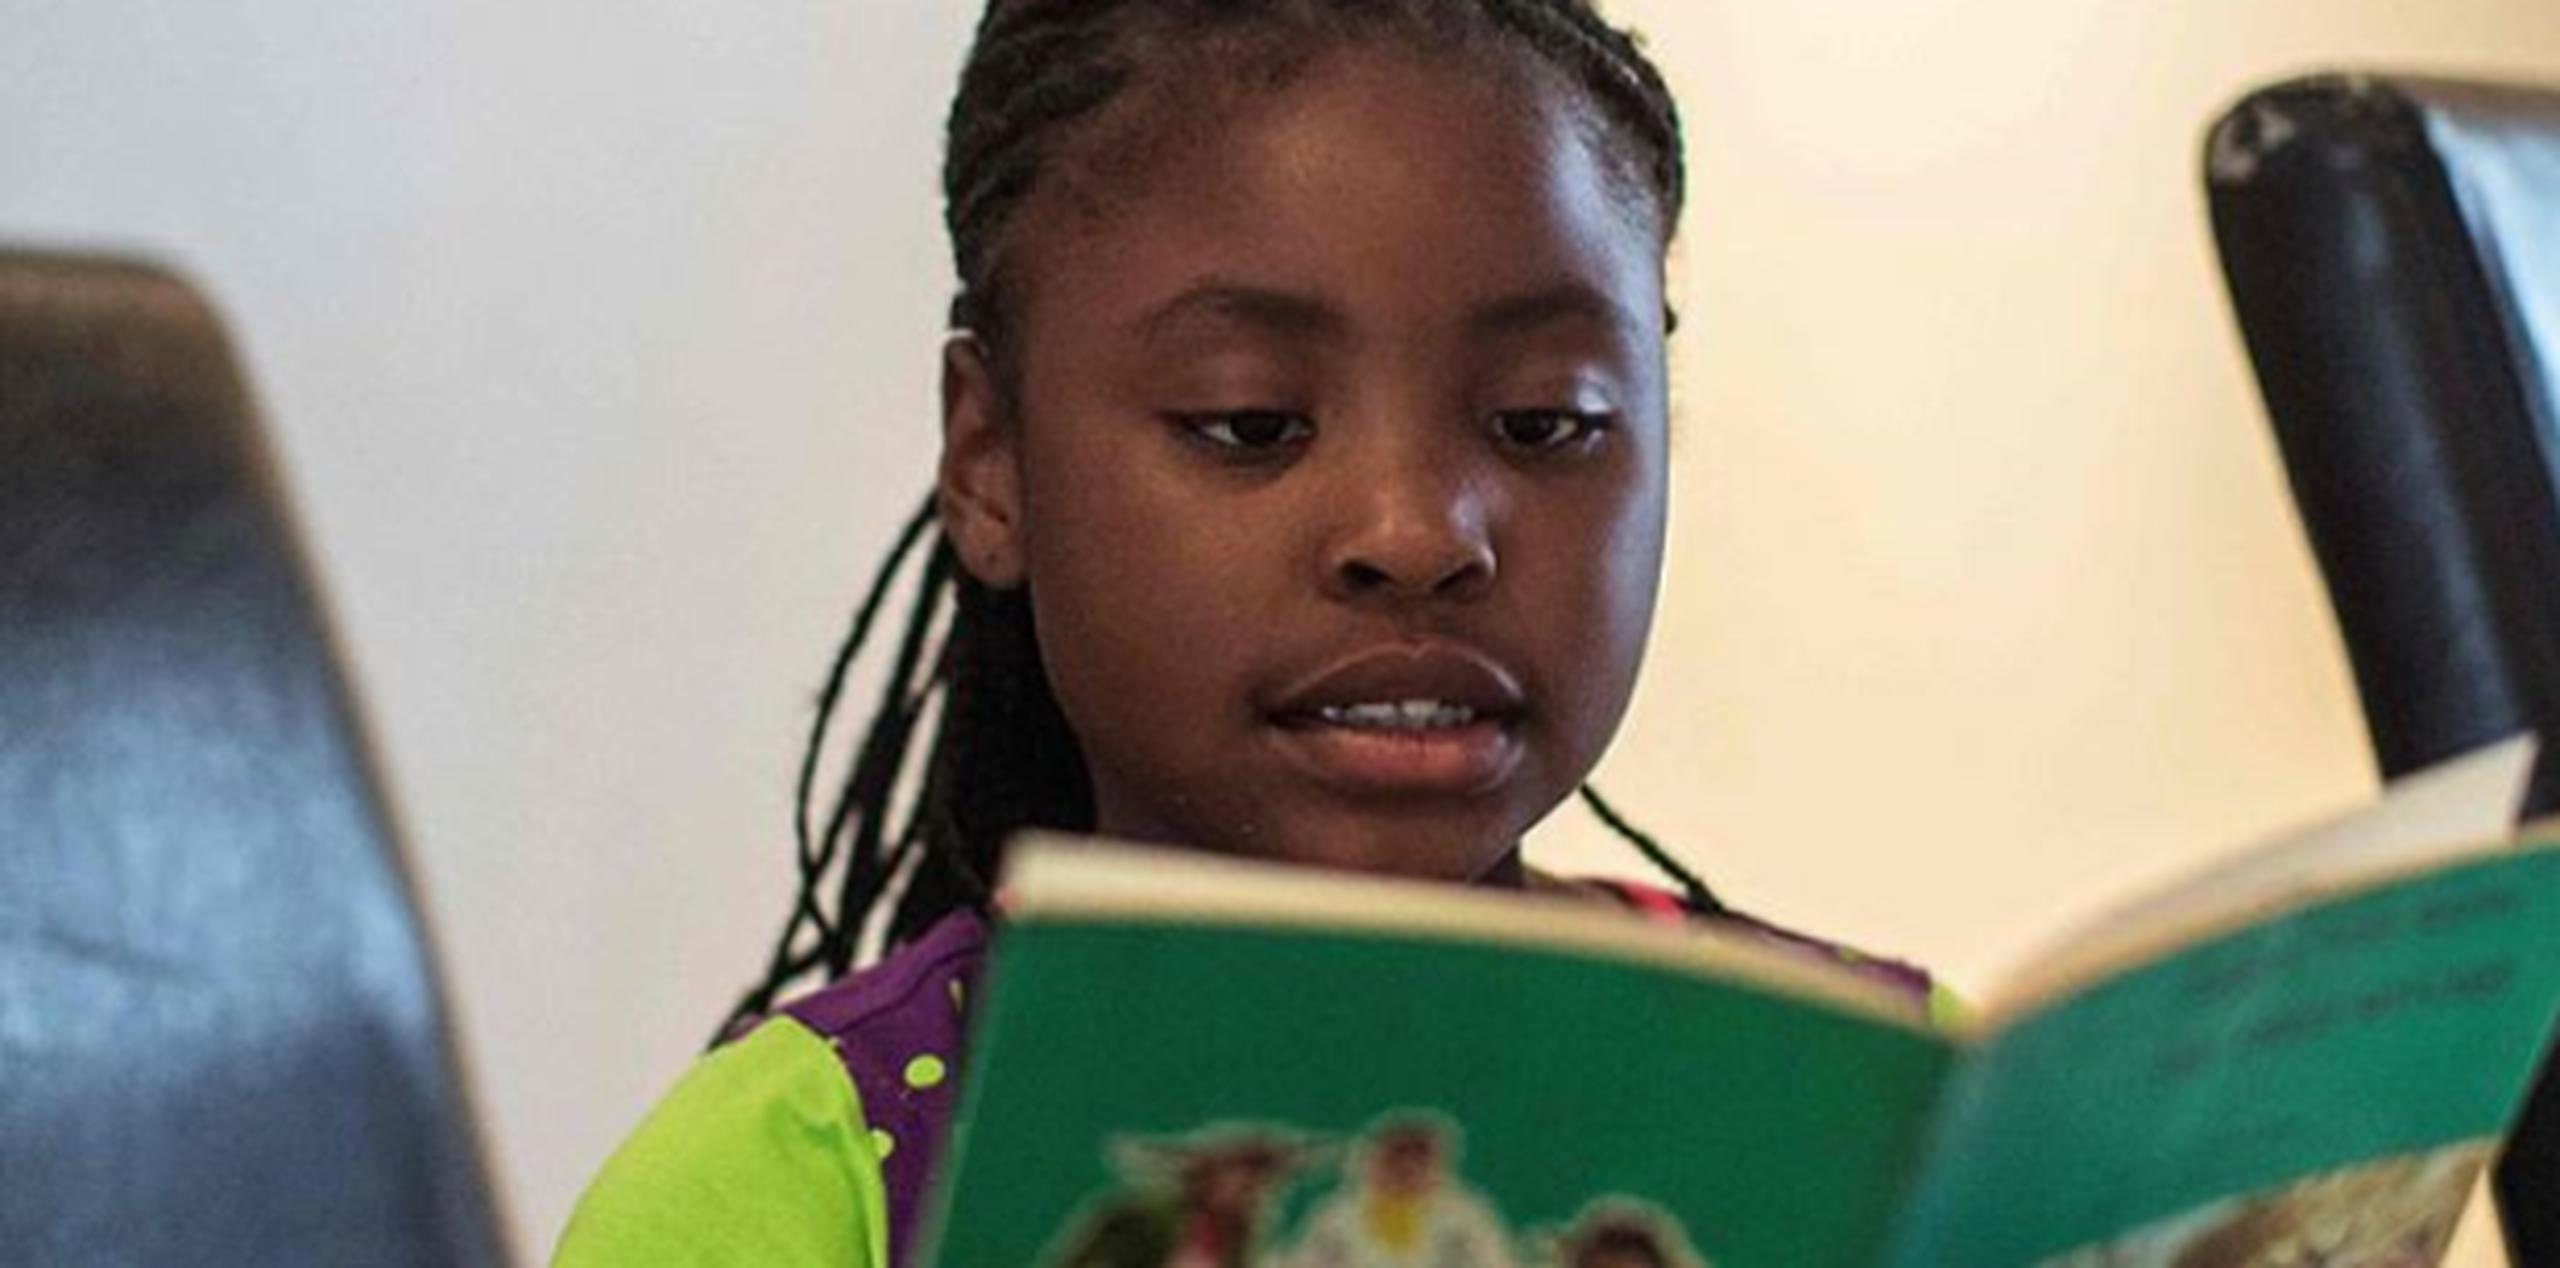 La niña escribió a escondidas, con bolígrafo verde y violeta, "Esperar las olas", en venta en la página web de la plataforma estadounidense por internet Amazon. (Emol)